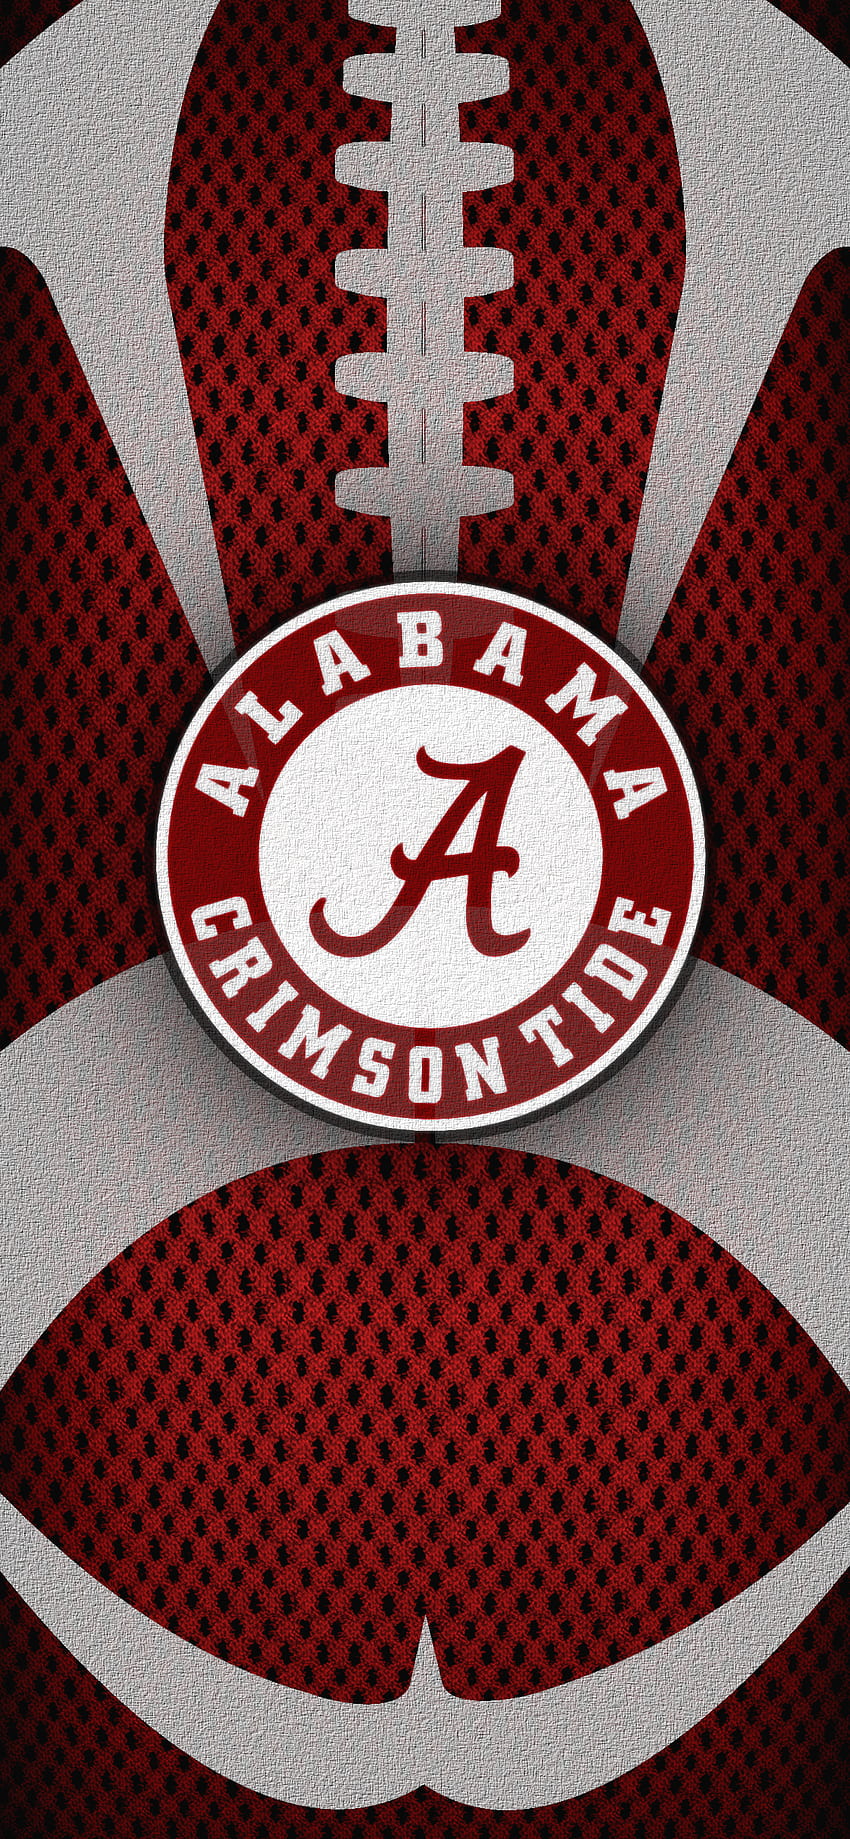 Bama Football. Crimson tide football, Alabama crimson tide football, Bama football HD phone wallpaper